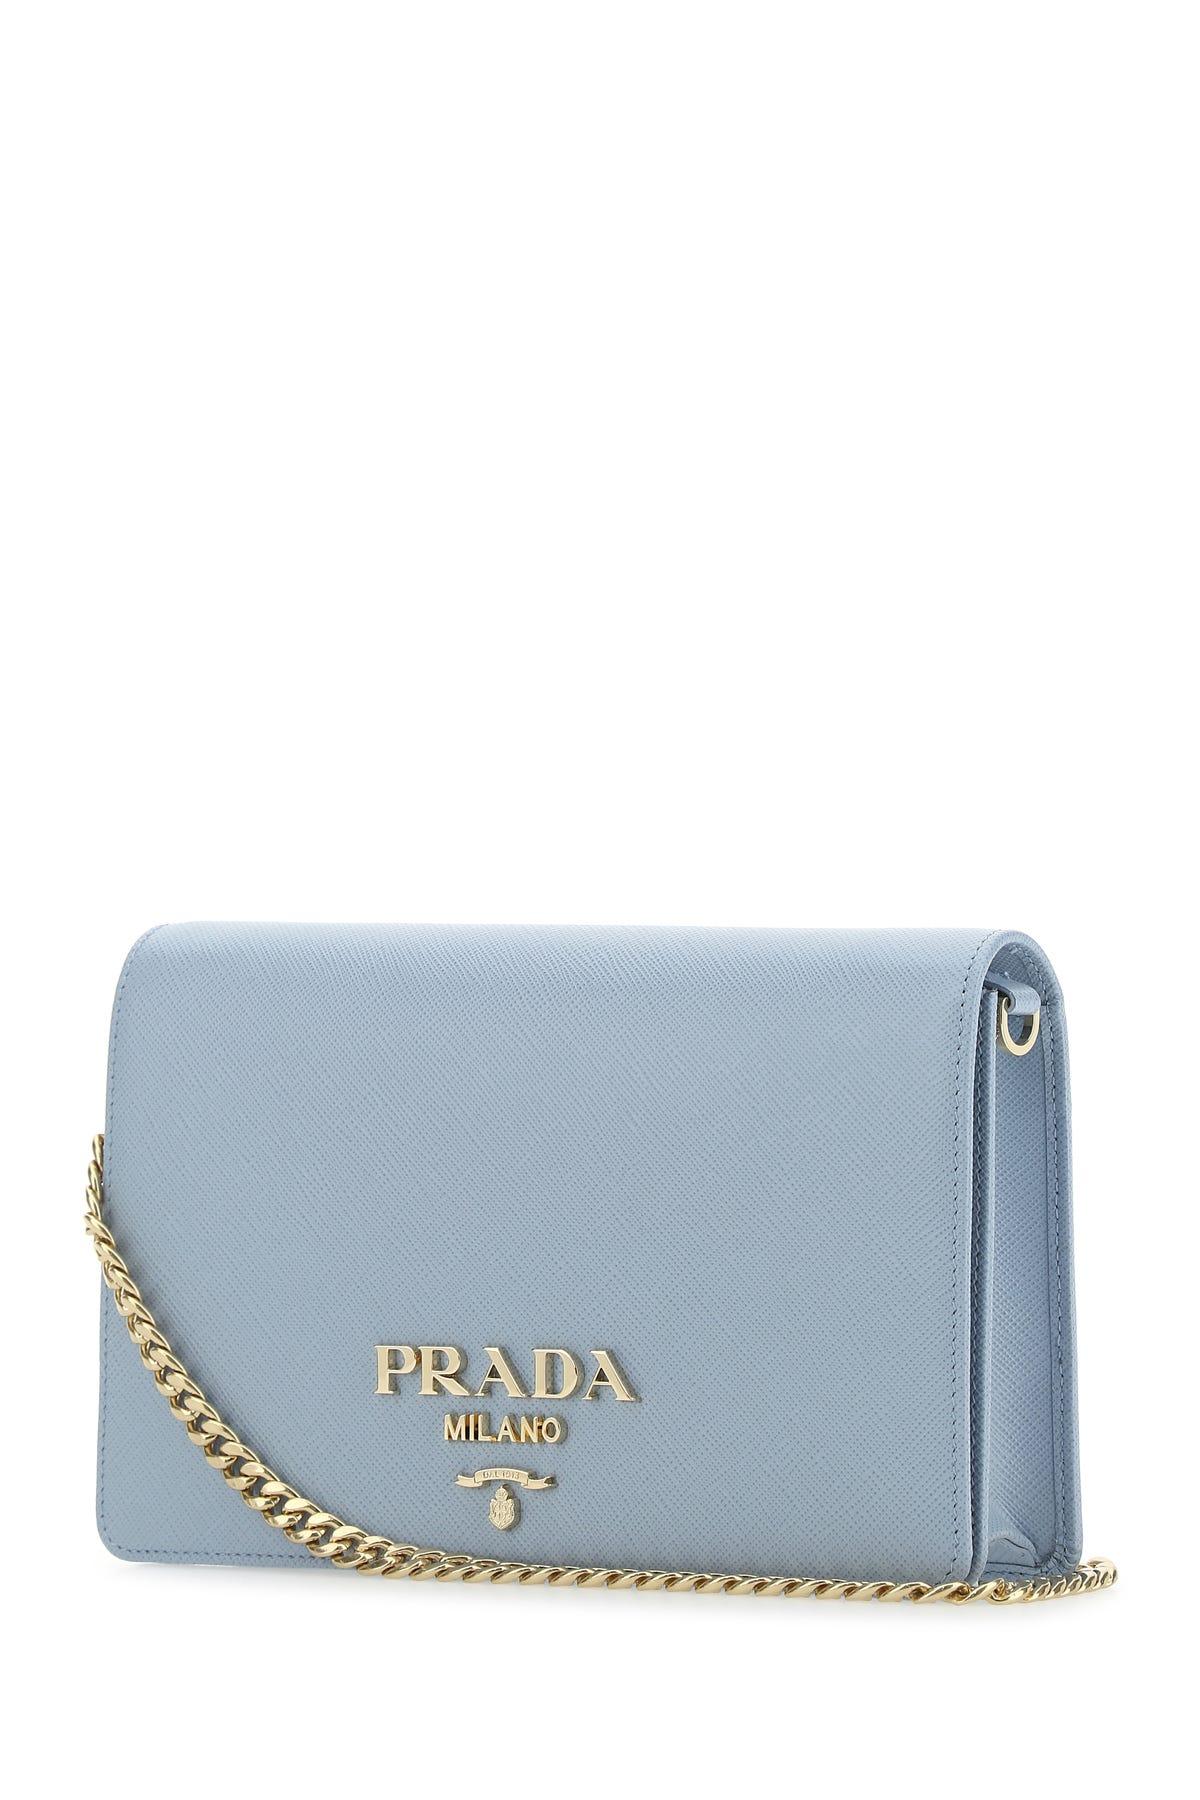 Prada Light blue Saffiano handbag